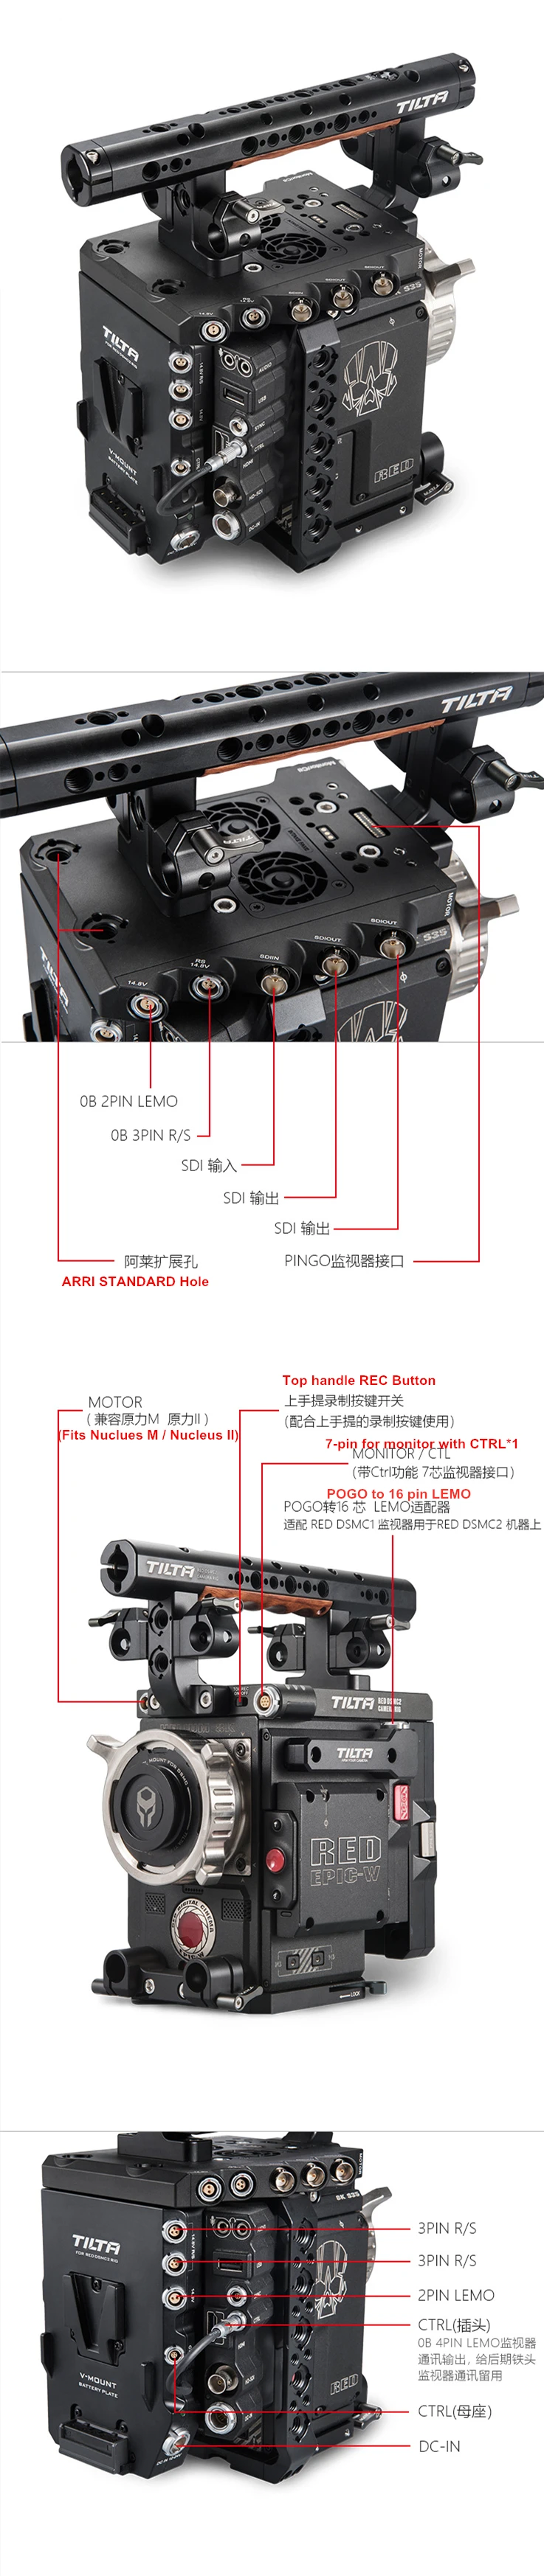 TILTA красный DSMC2 клетка ESR-T02-C опорная пластина Верхняя ручка камера установка для красный DSMC2 Ворон/Оружие/SCARLET-W с системой питания SDI вход/выход